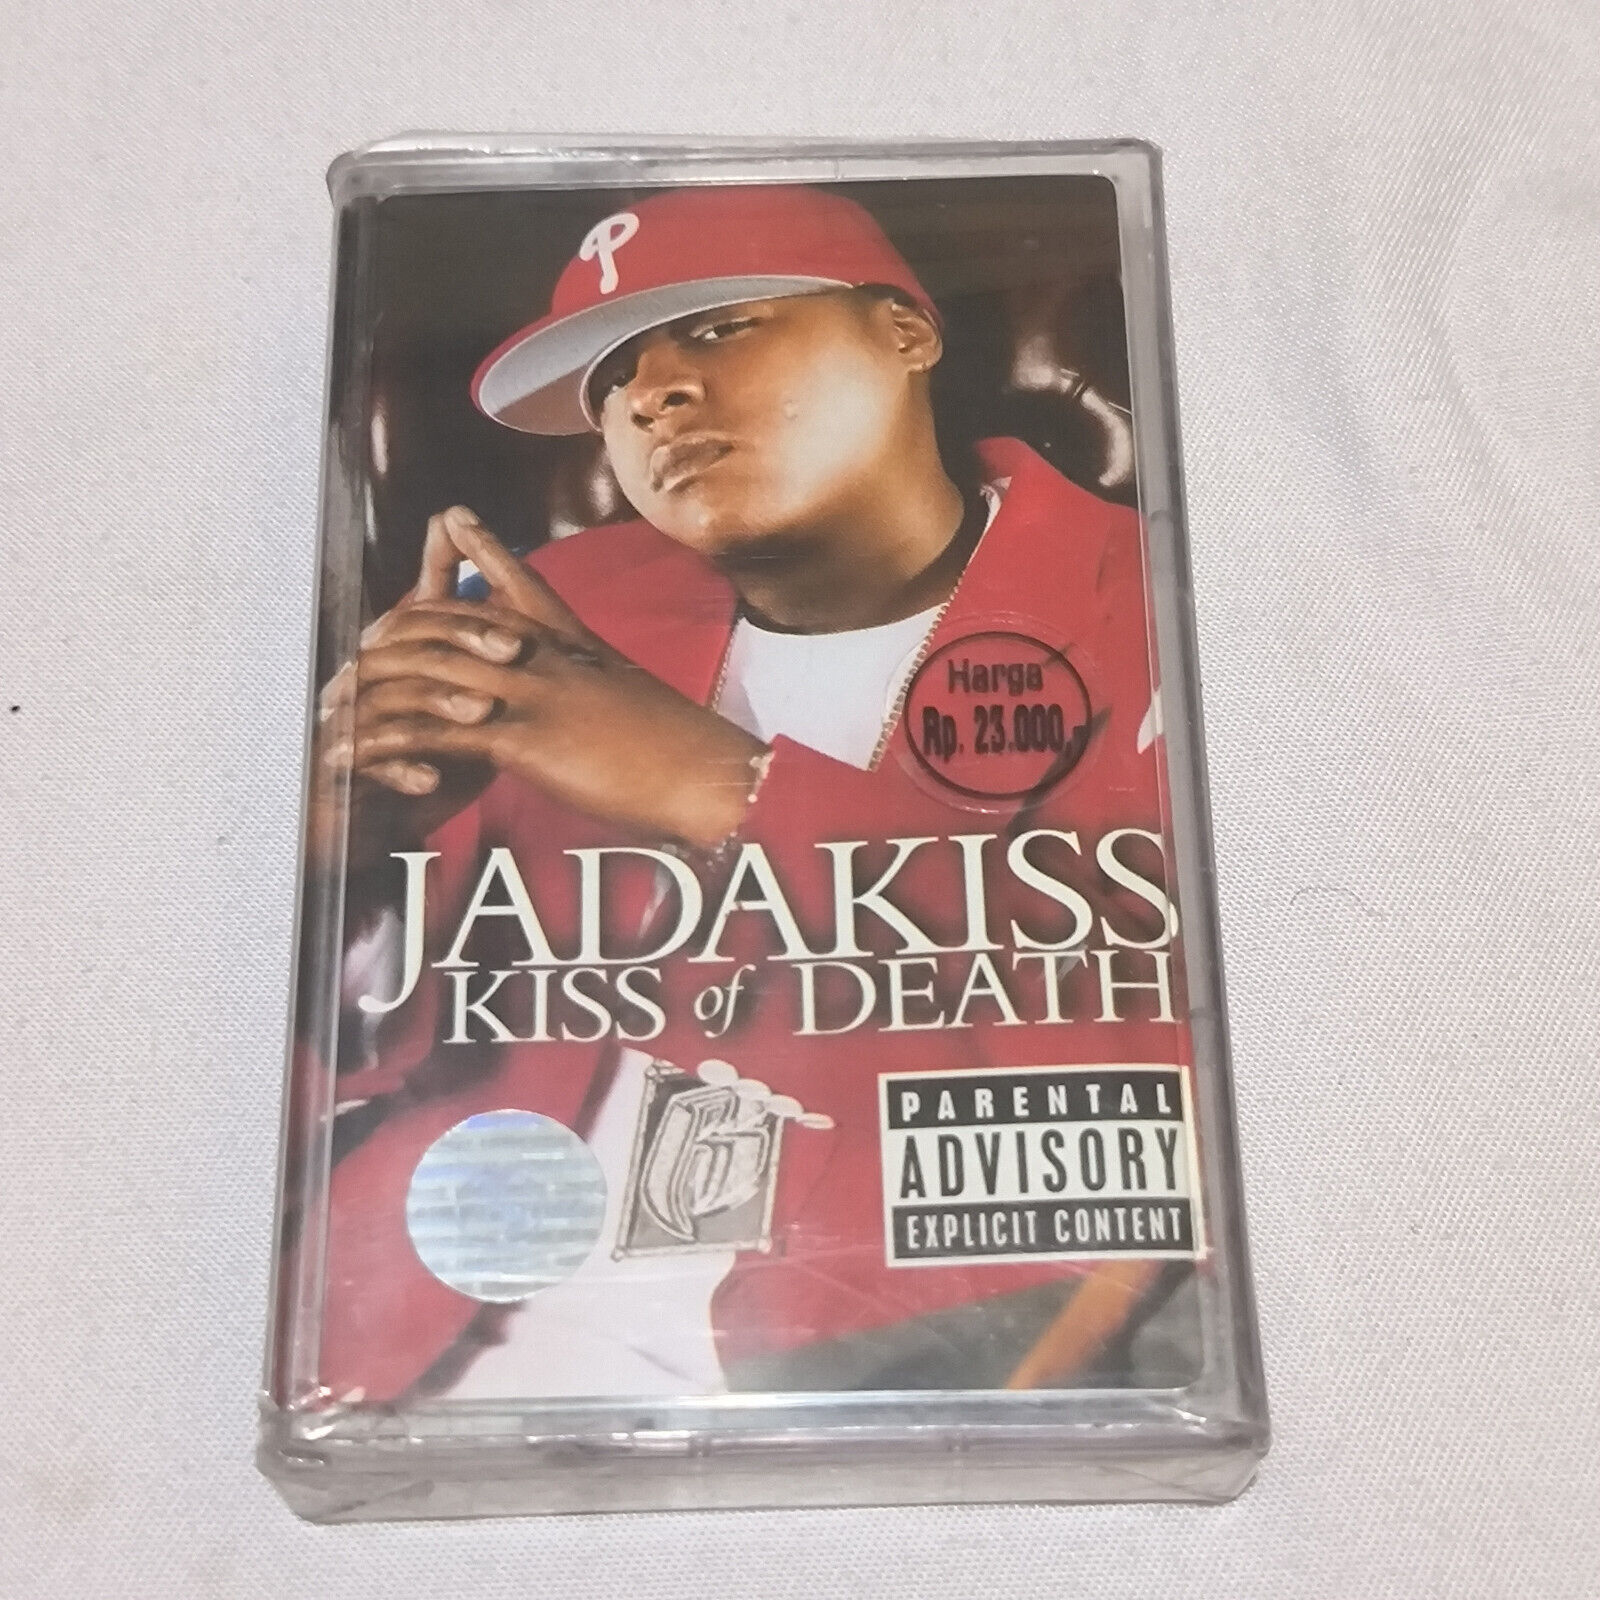 jadakiss - kiss of death 2004 original indonesia tapes brand NEW